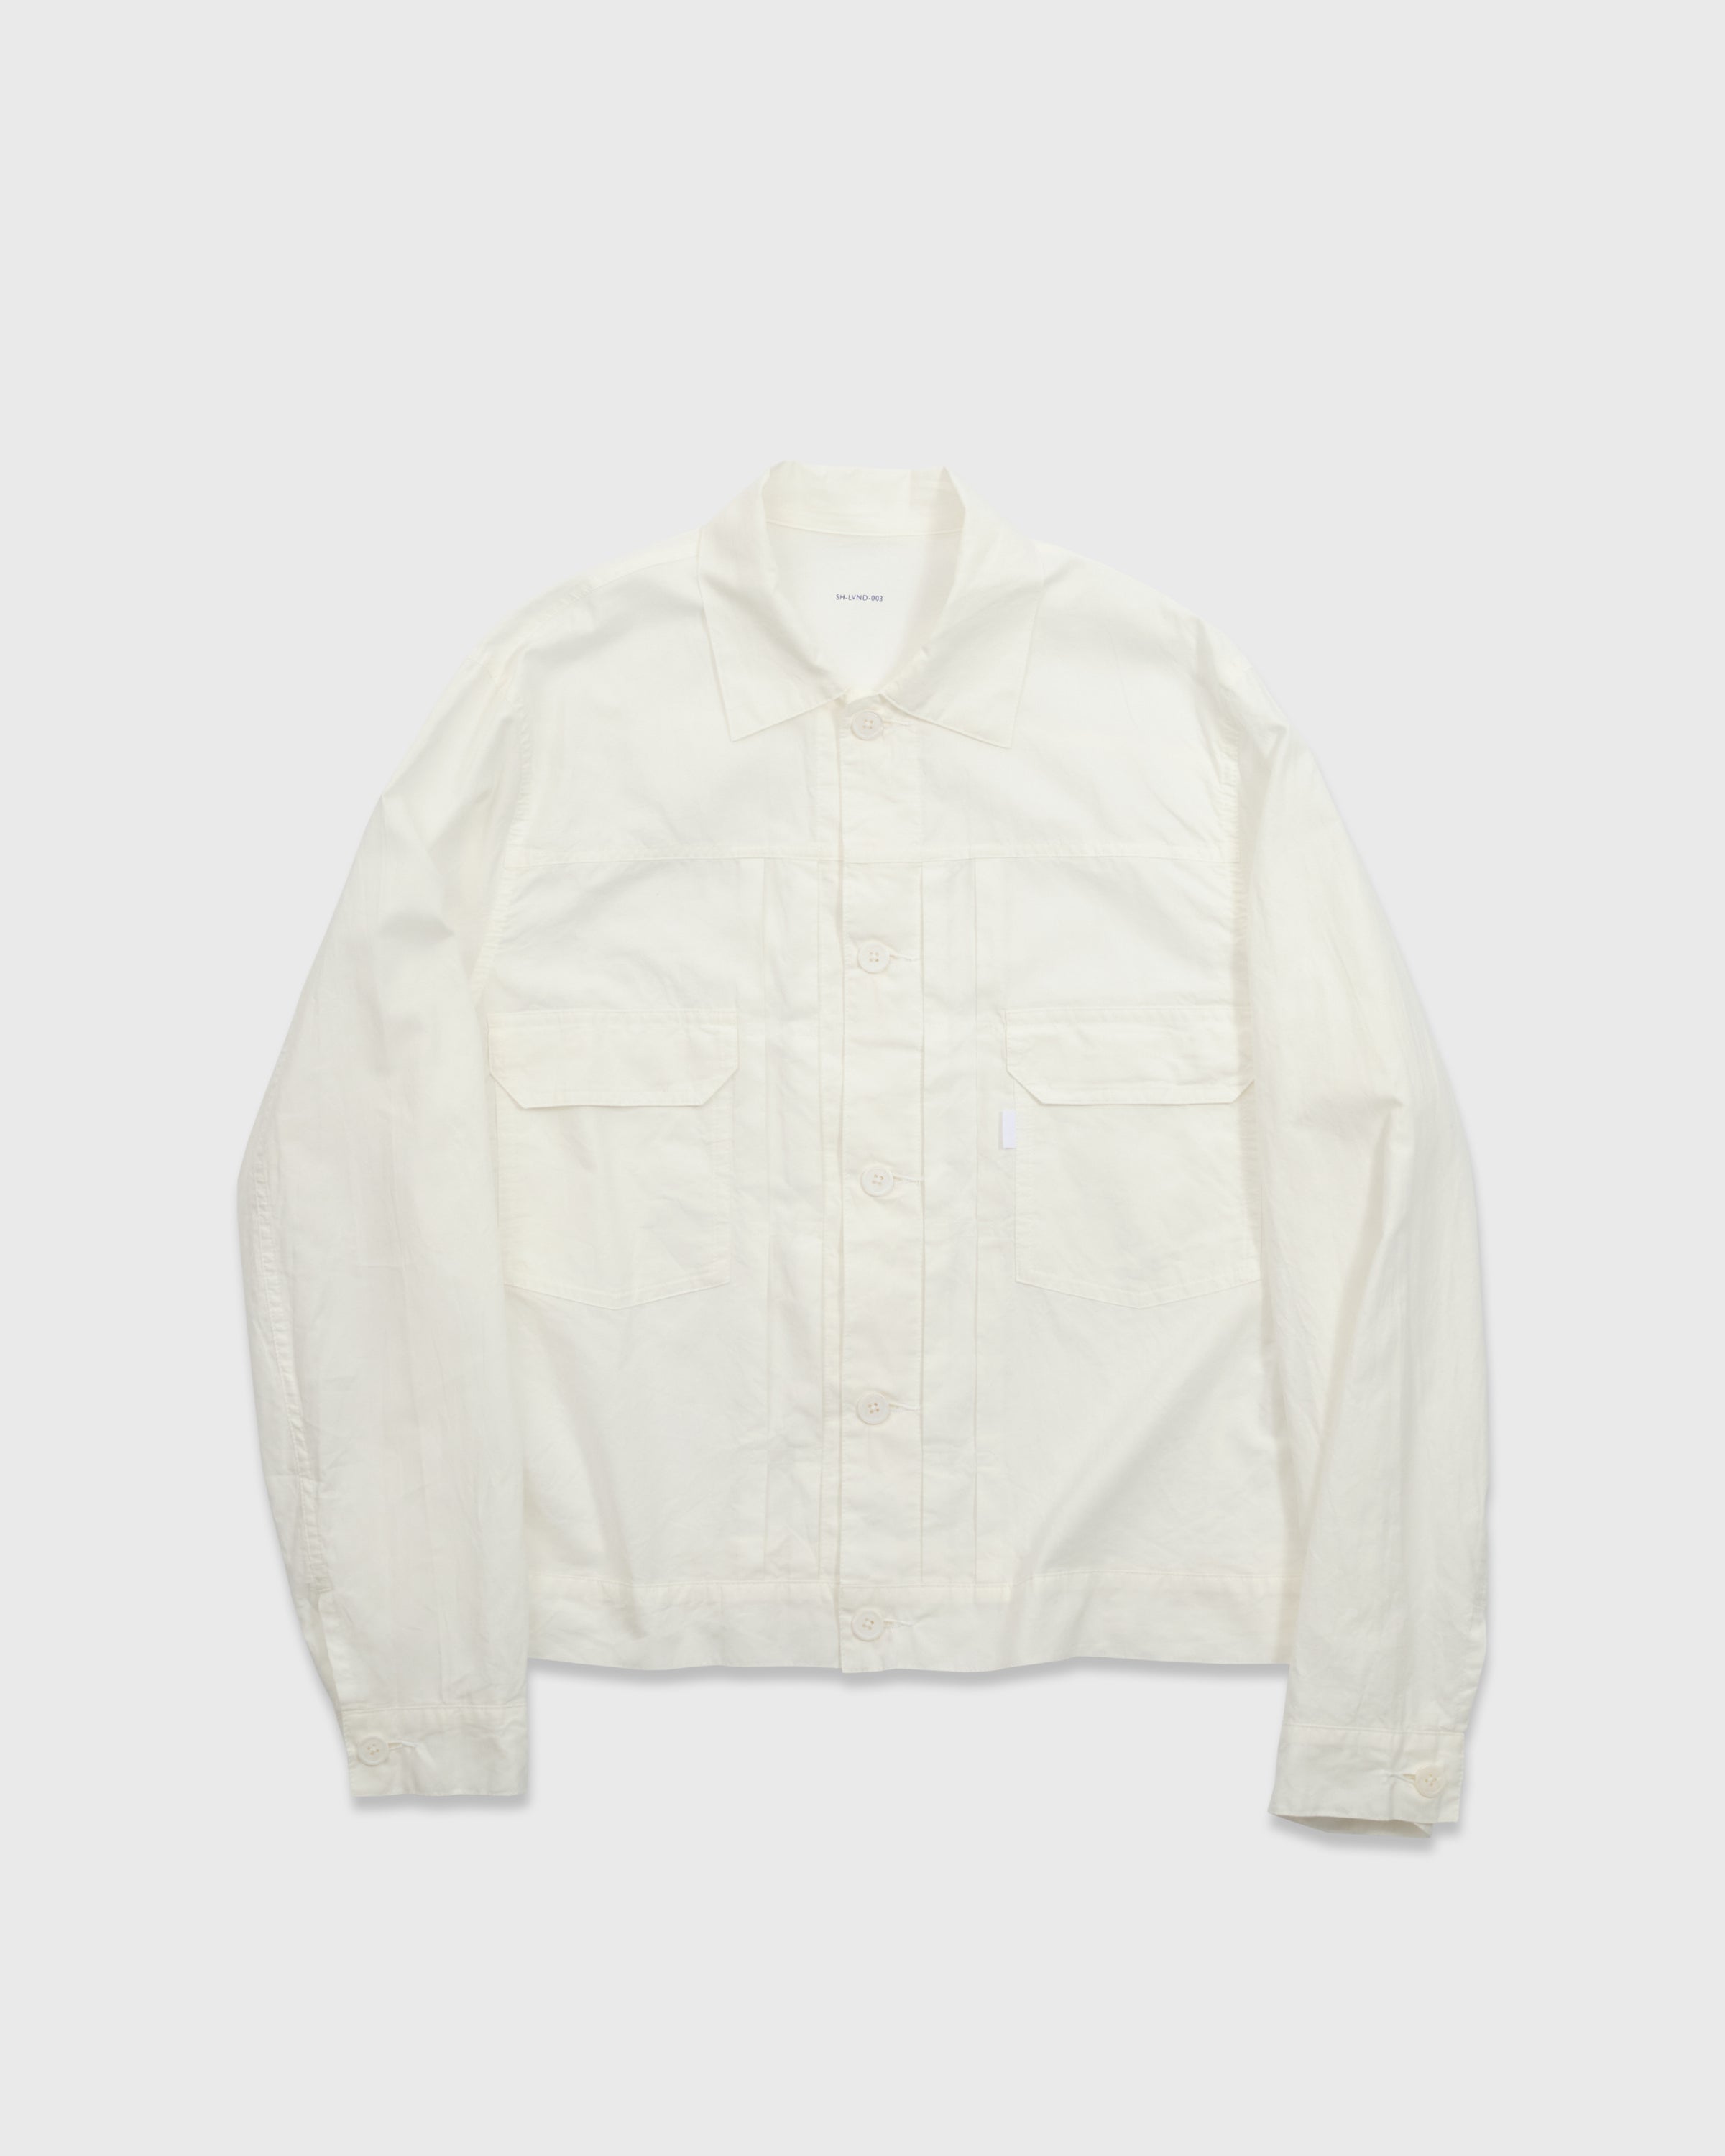 S H LVND-003 Trucker Shirt, White